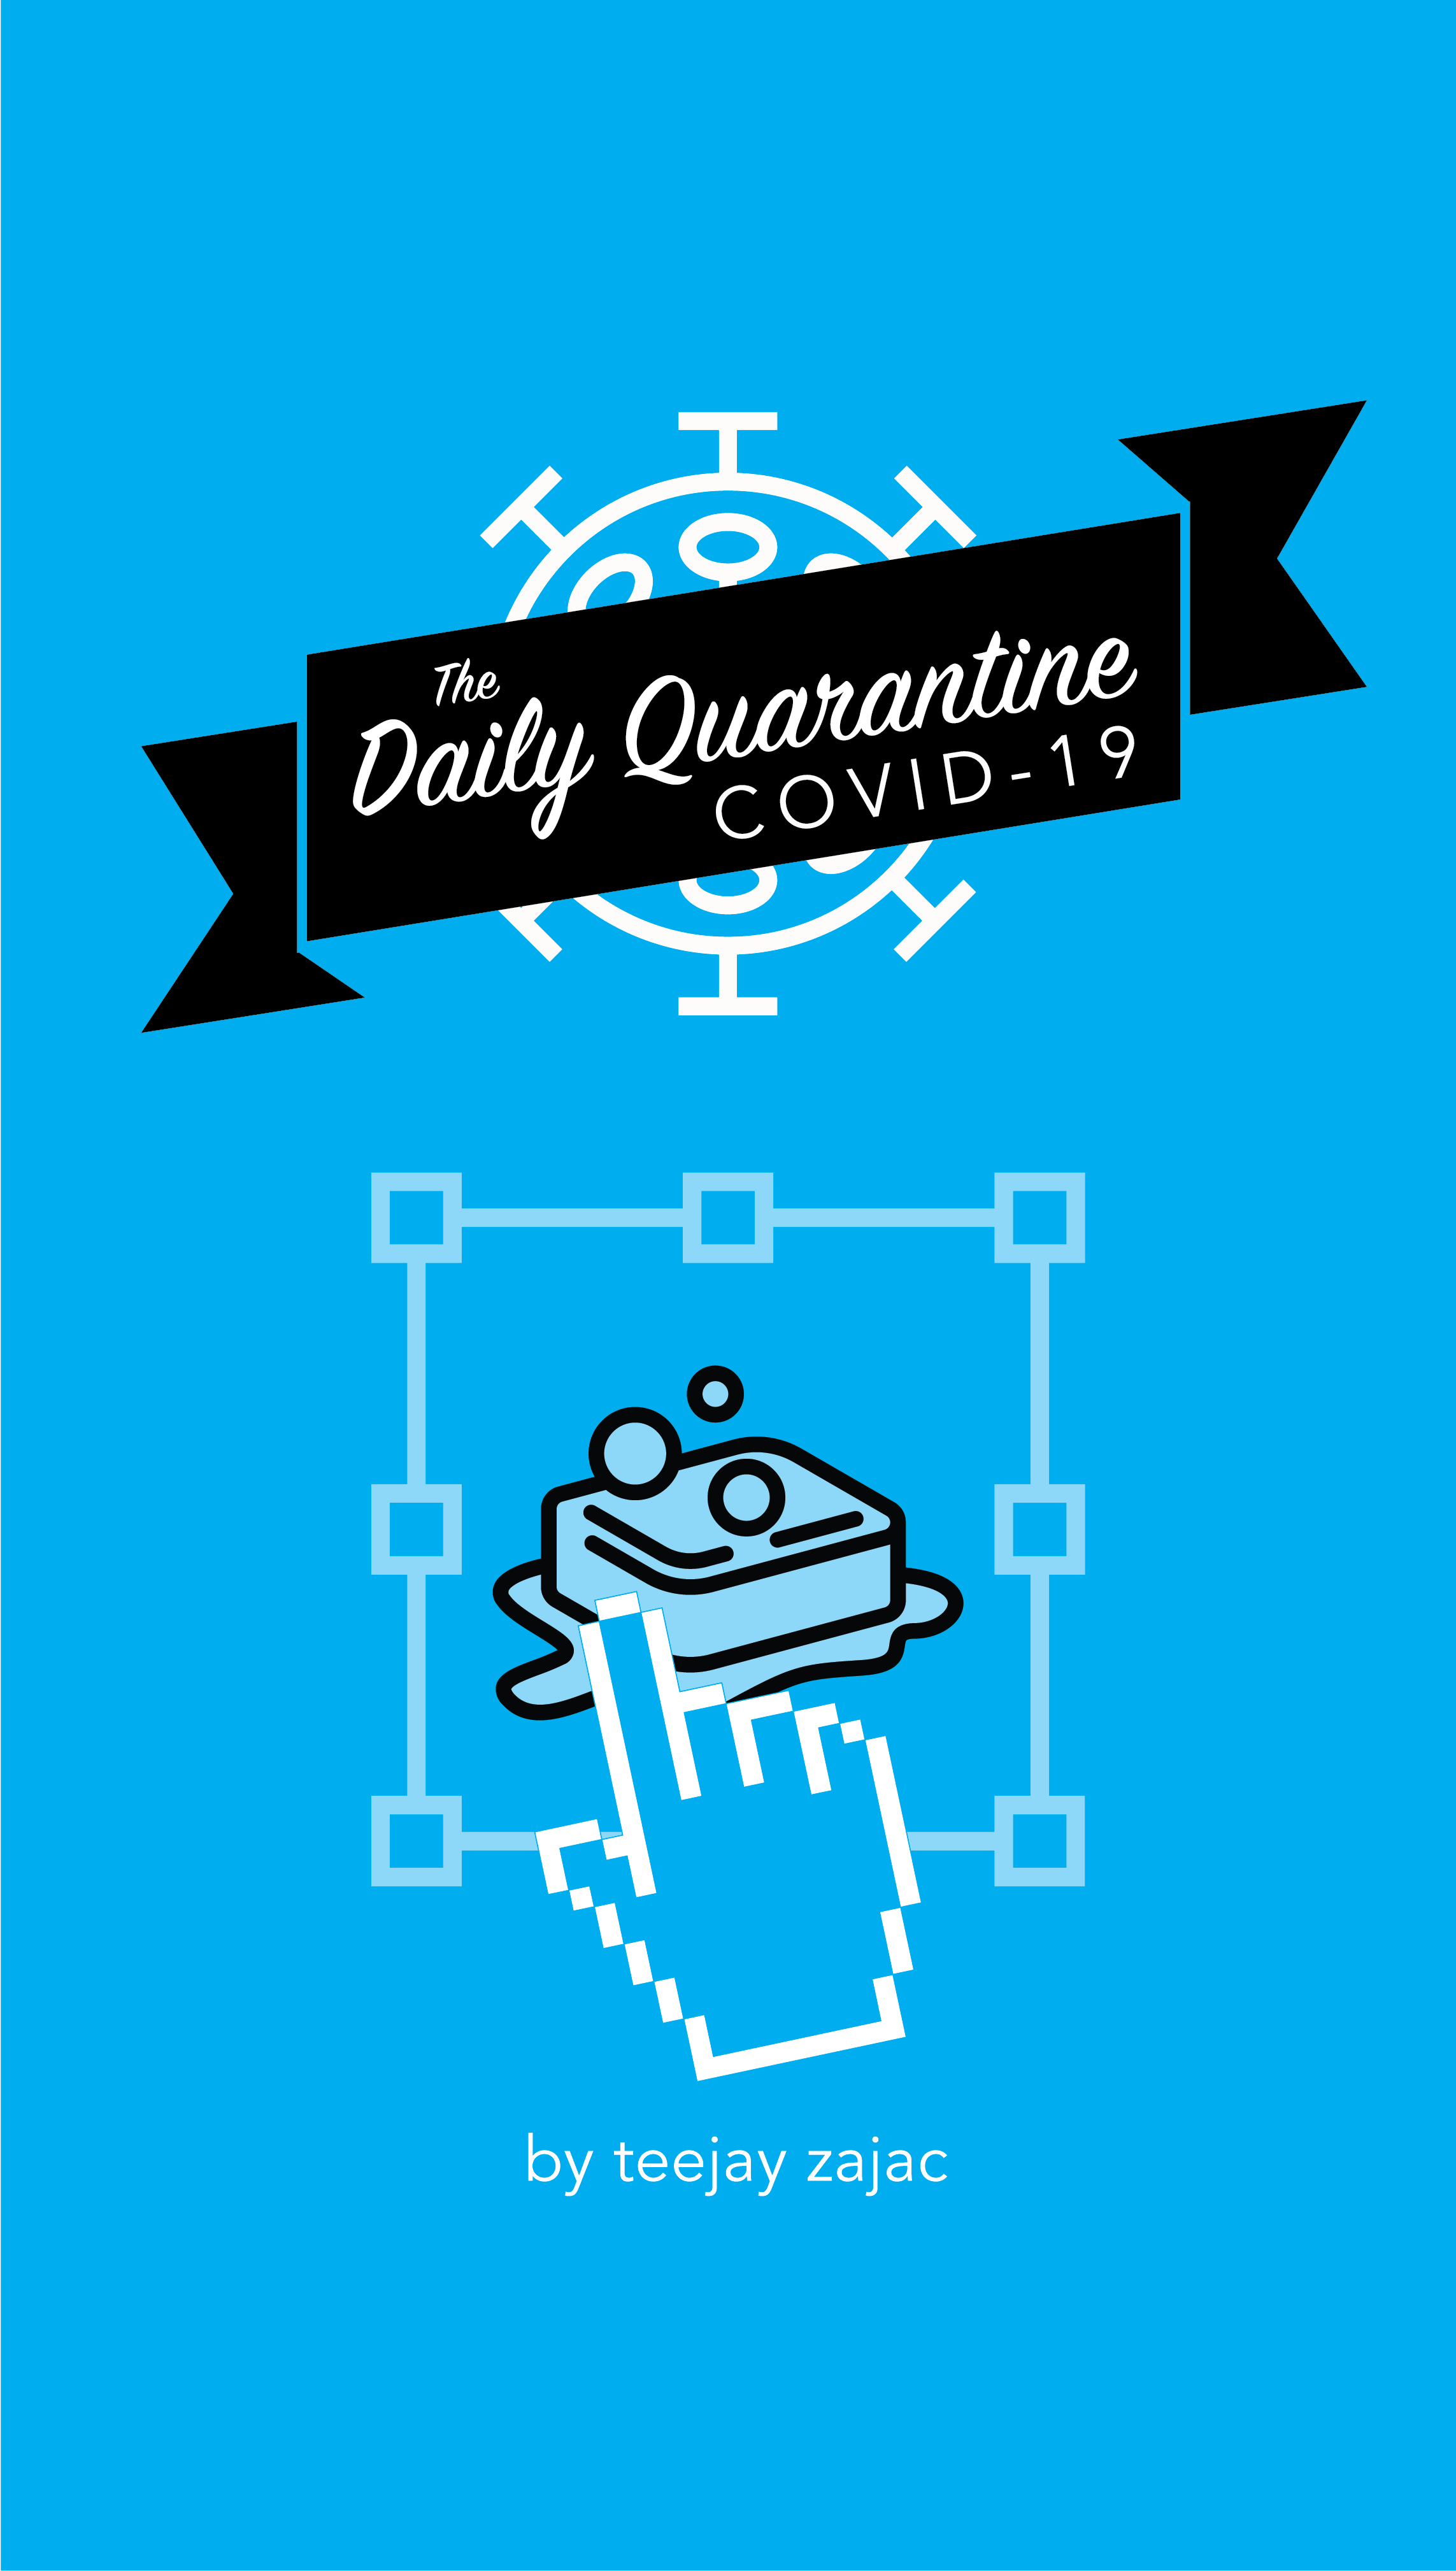 The Daily Quarantine COVID-19 by TeeJay Zajac